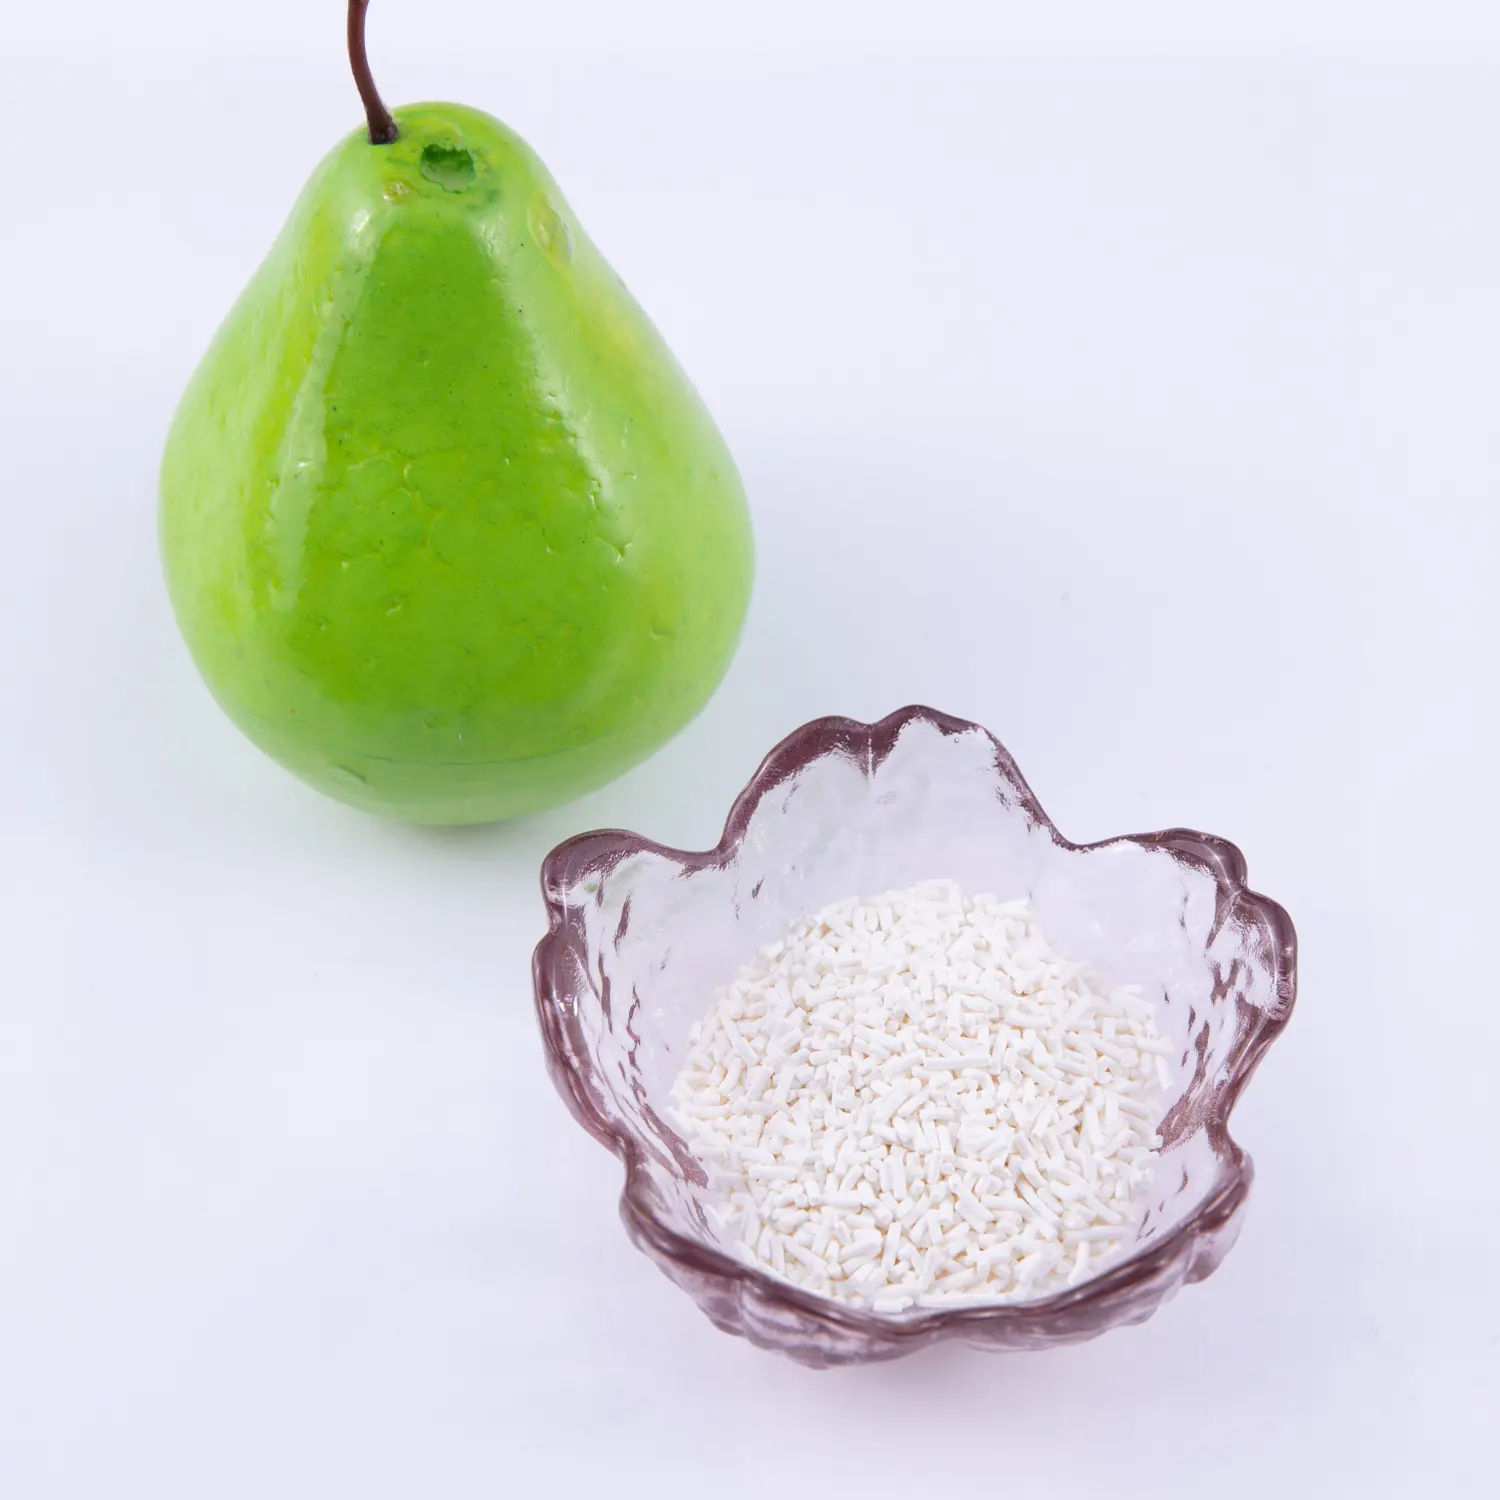 Cấp thực phẩm chất bảo quản Kali sorbate E202 dạng hạt cho nước ép trái cây và đồ uống